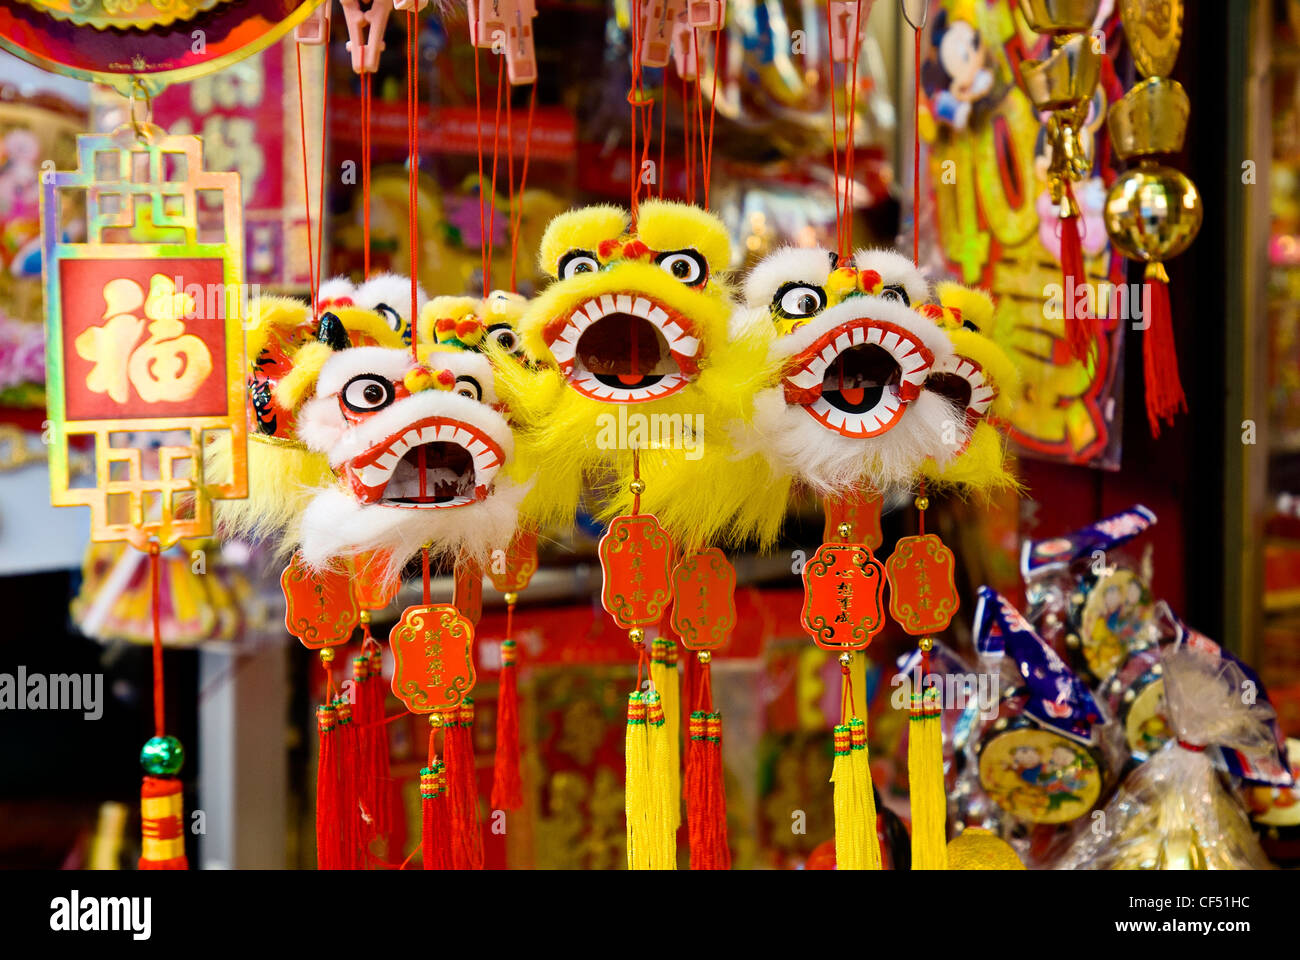 Boutique de souvenirs dans le quartier chinois, la ville de New York, vend des marionnettes chinoises. Banque D'Images